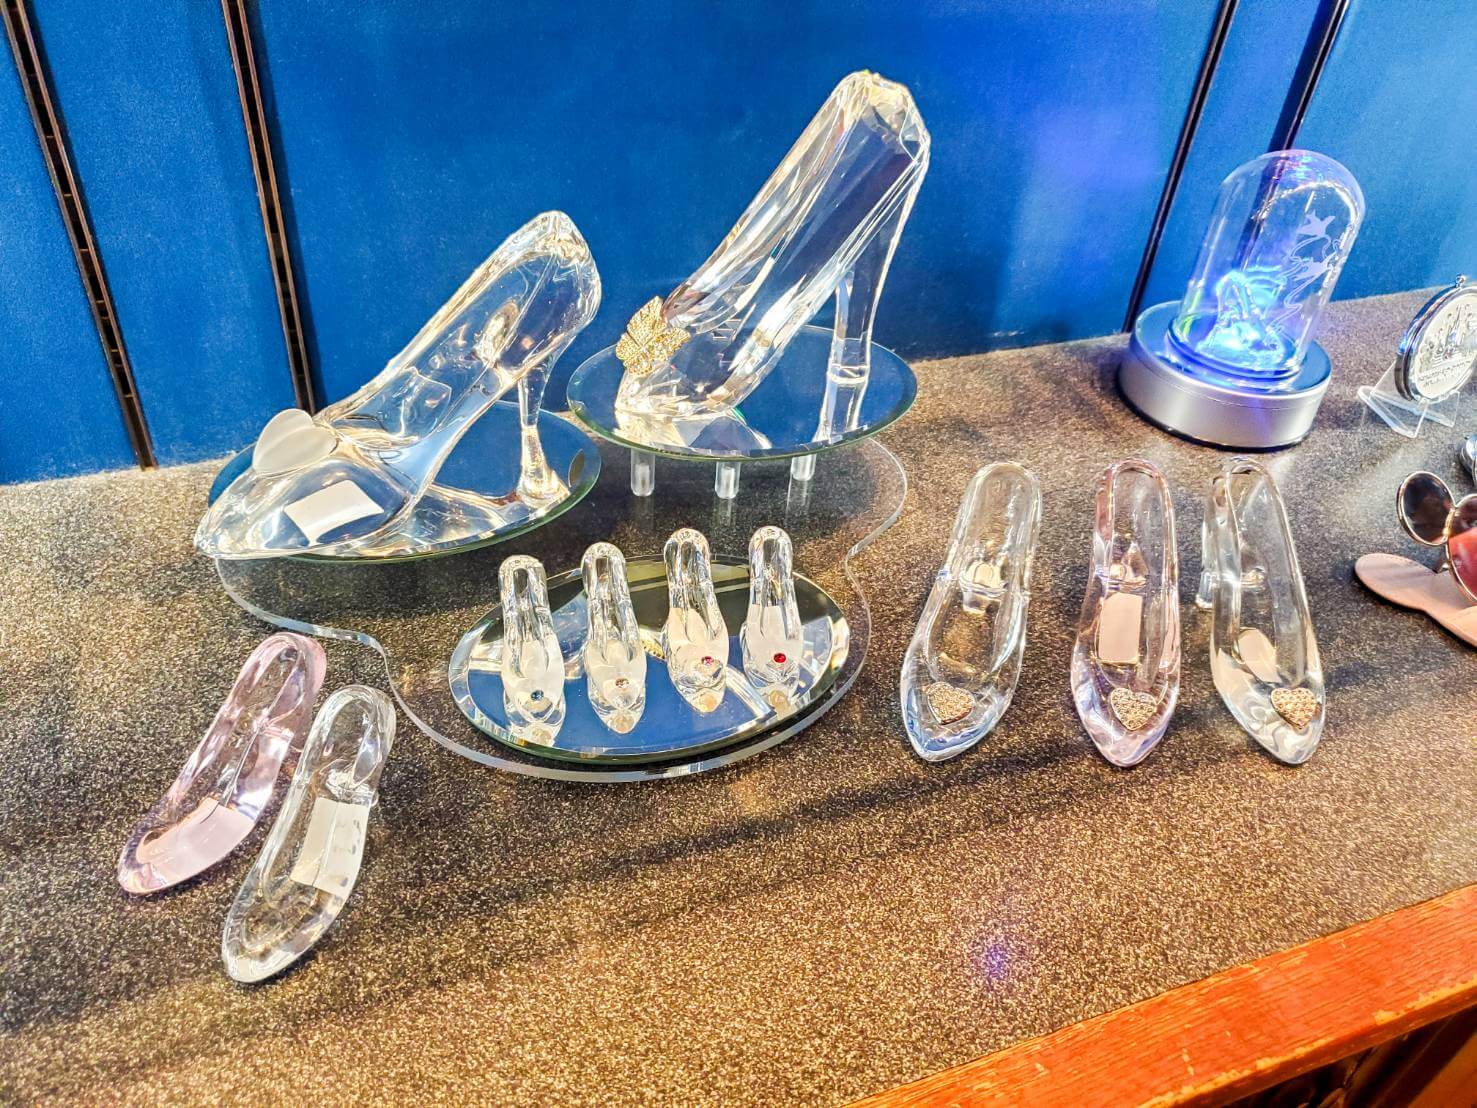 東京ディズニーランド・ディズニーシーではガラスの靴を販売しているショップがある!名入れもできる素敵なグッズ